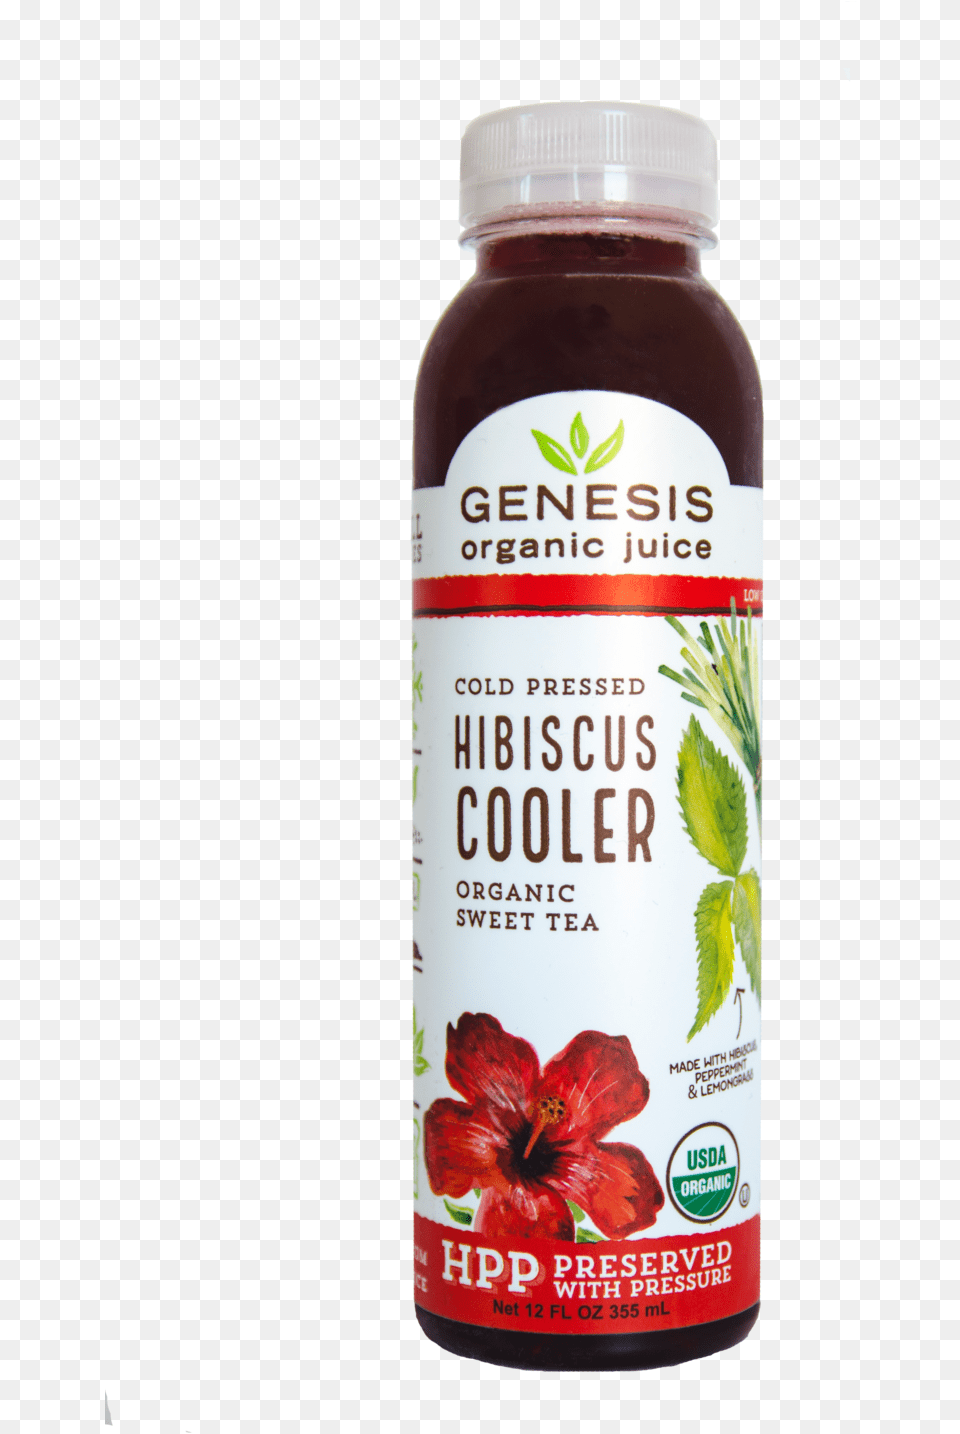 Hibiscus Cooler Genesis Juice, Herbal, Herbs, Plant, Flower Png Image